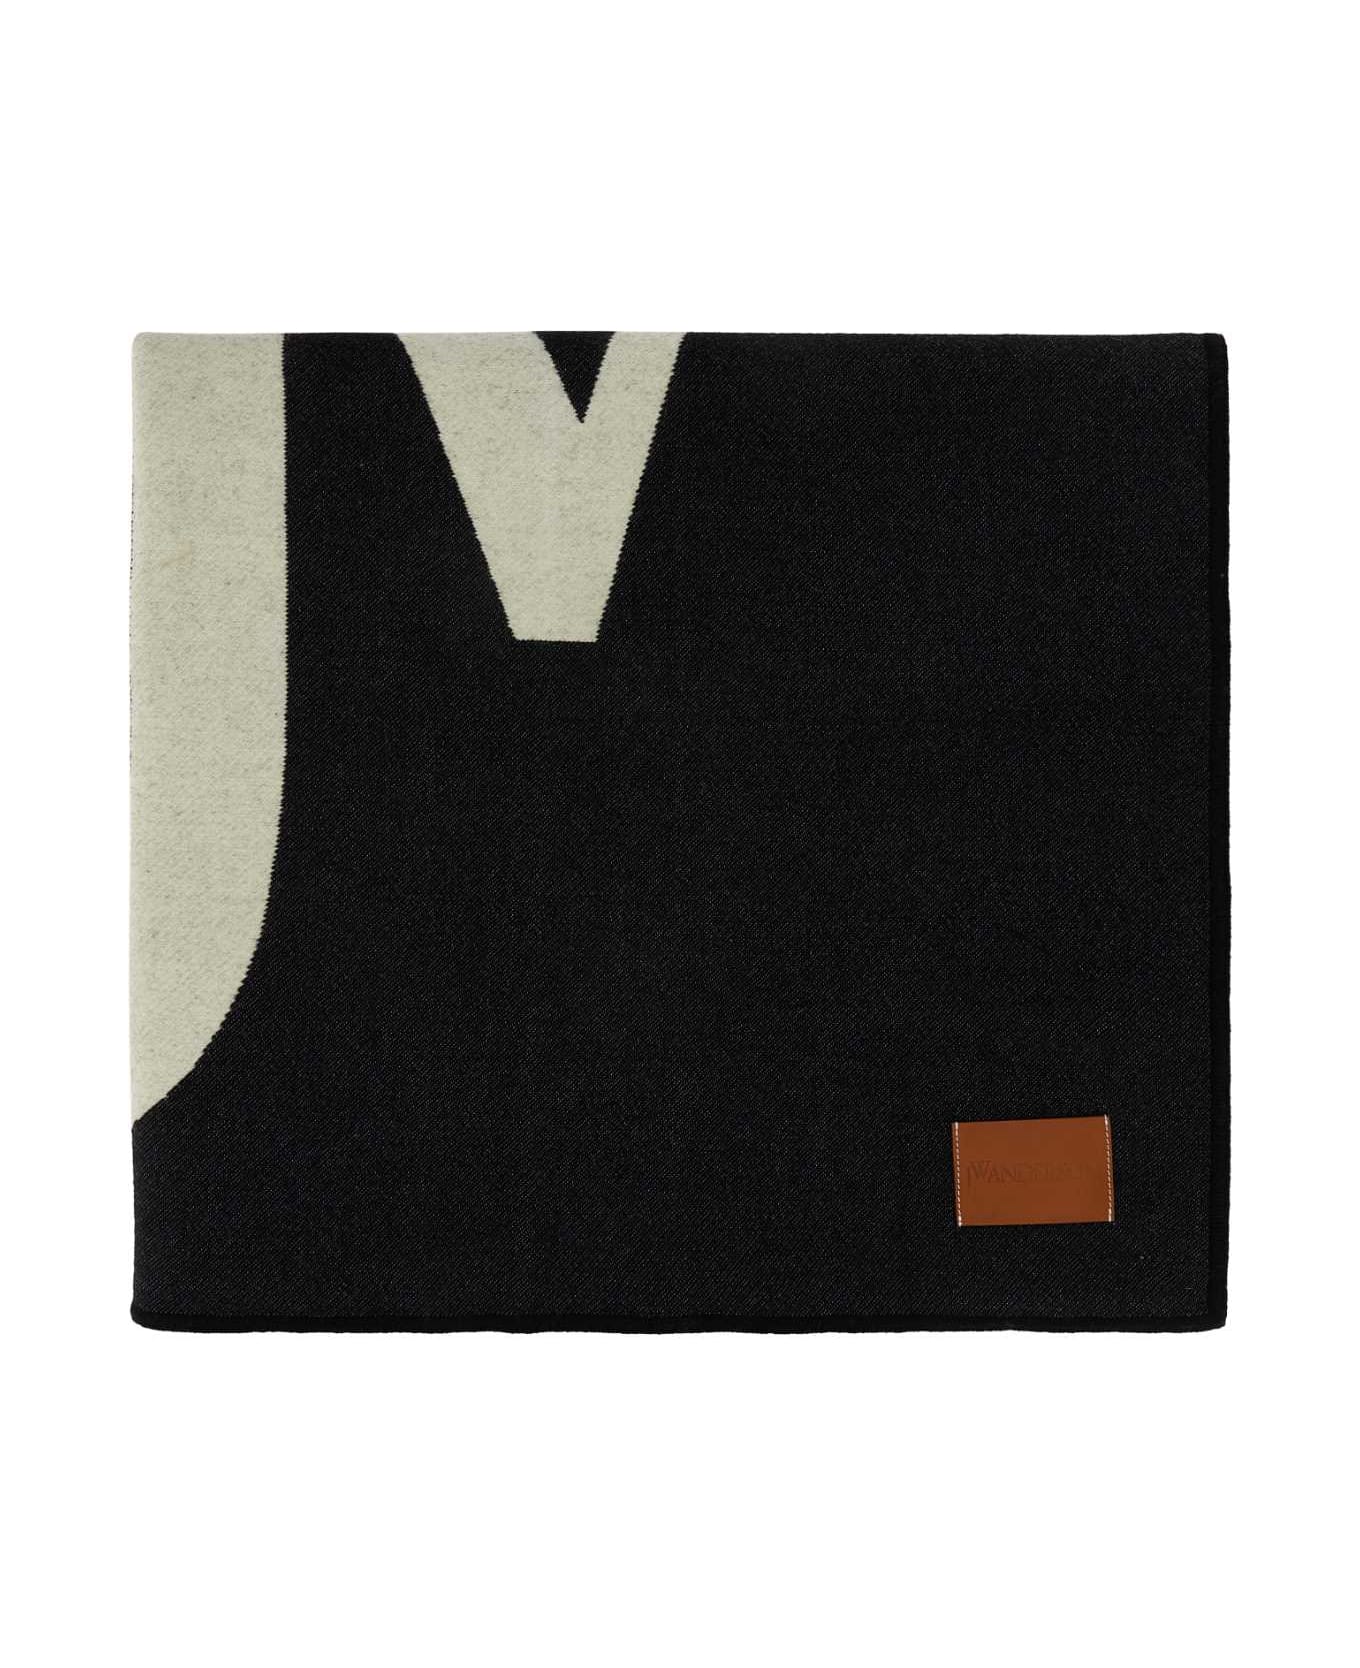 J.W. Anderson Black Wool Blend Blanket - BLACKWHITE